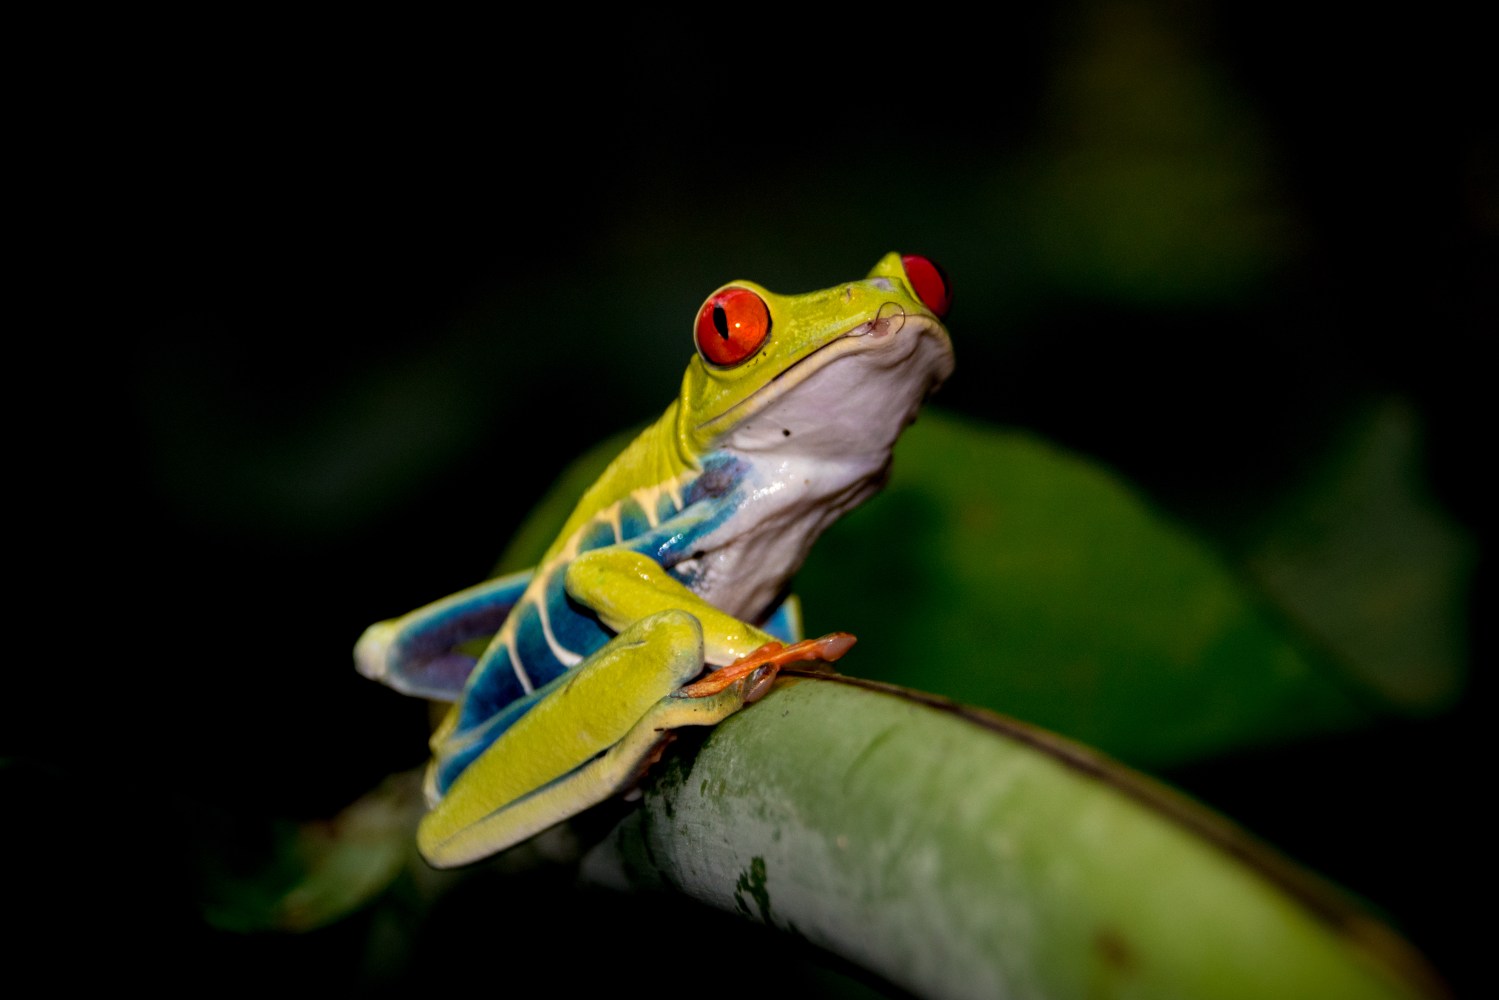 A tropical frog sitting on a leaf